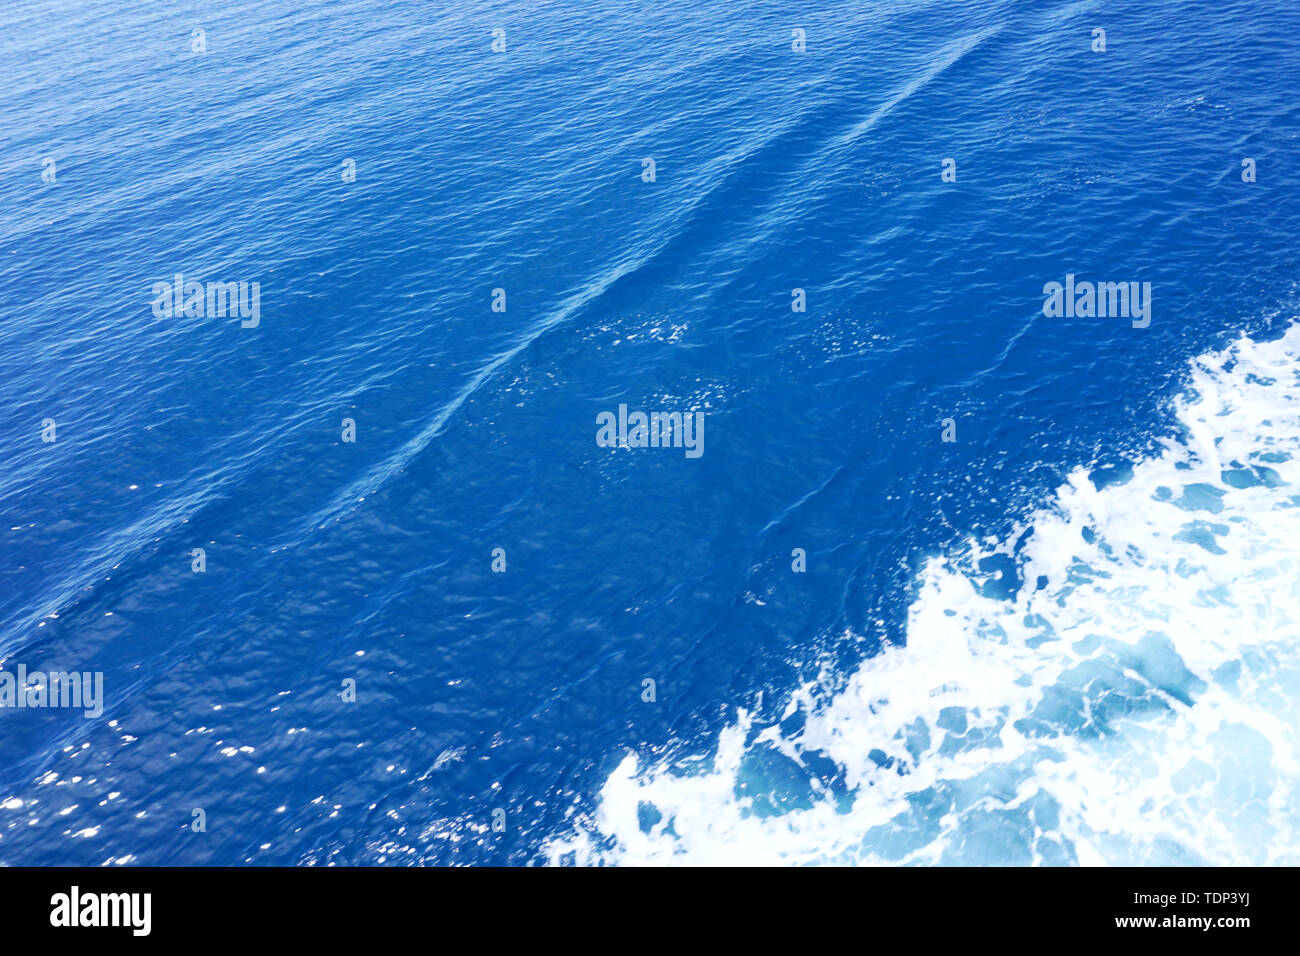 Abstrait d'arrière-plan. Surface en bleu clair. L'eau de mer avec une trace de diagonal white sea foam Banque D'Images